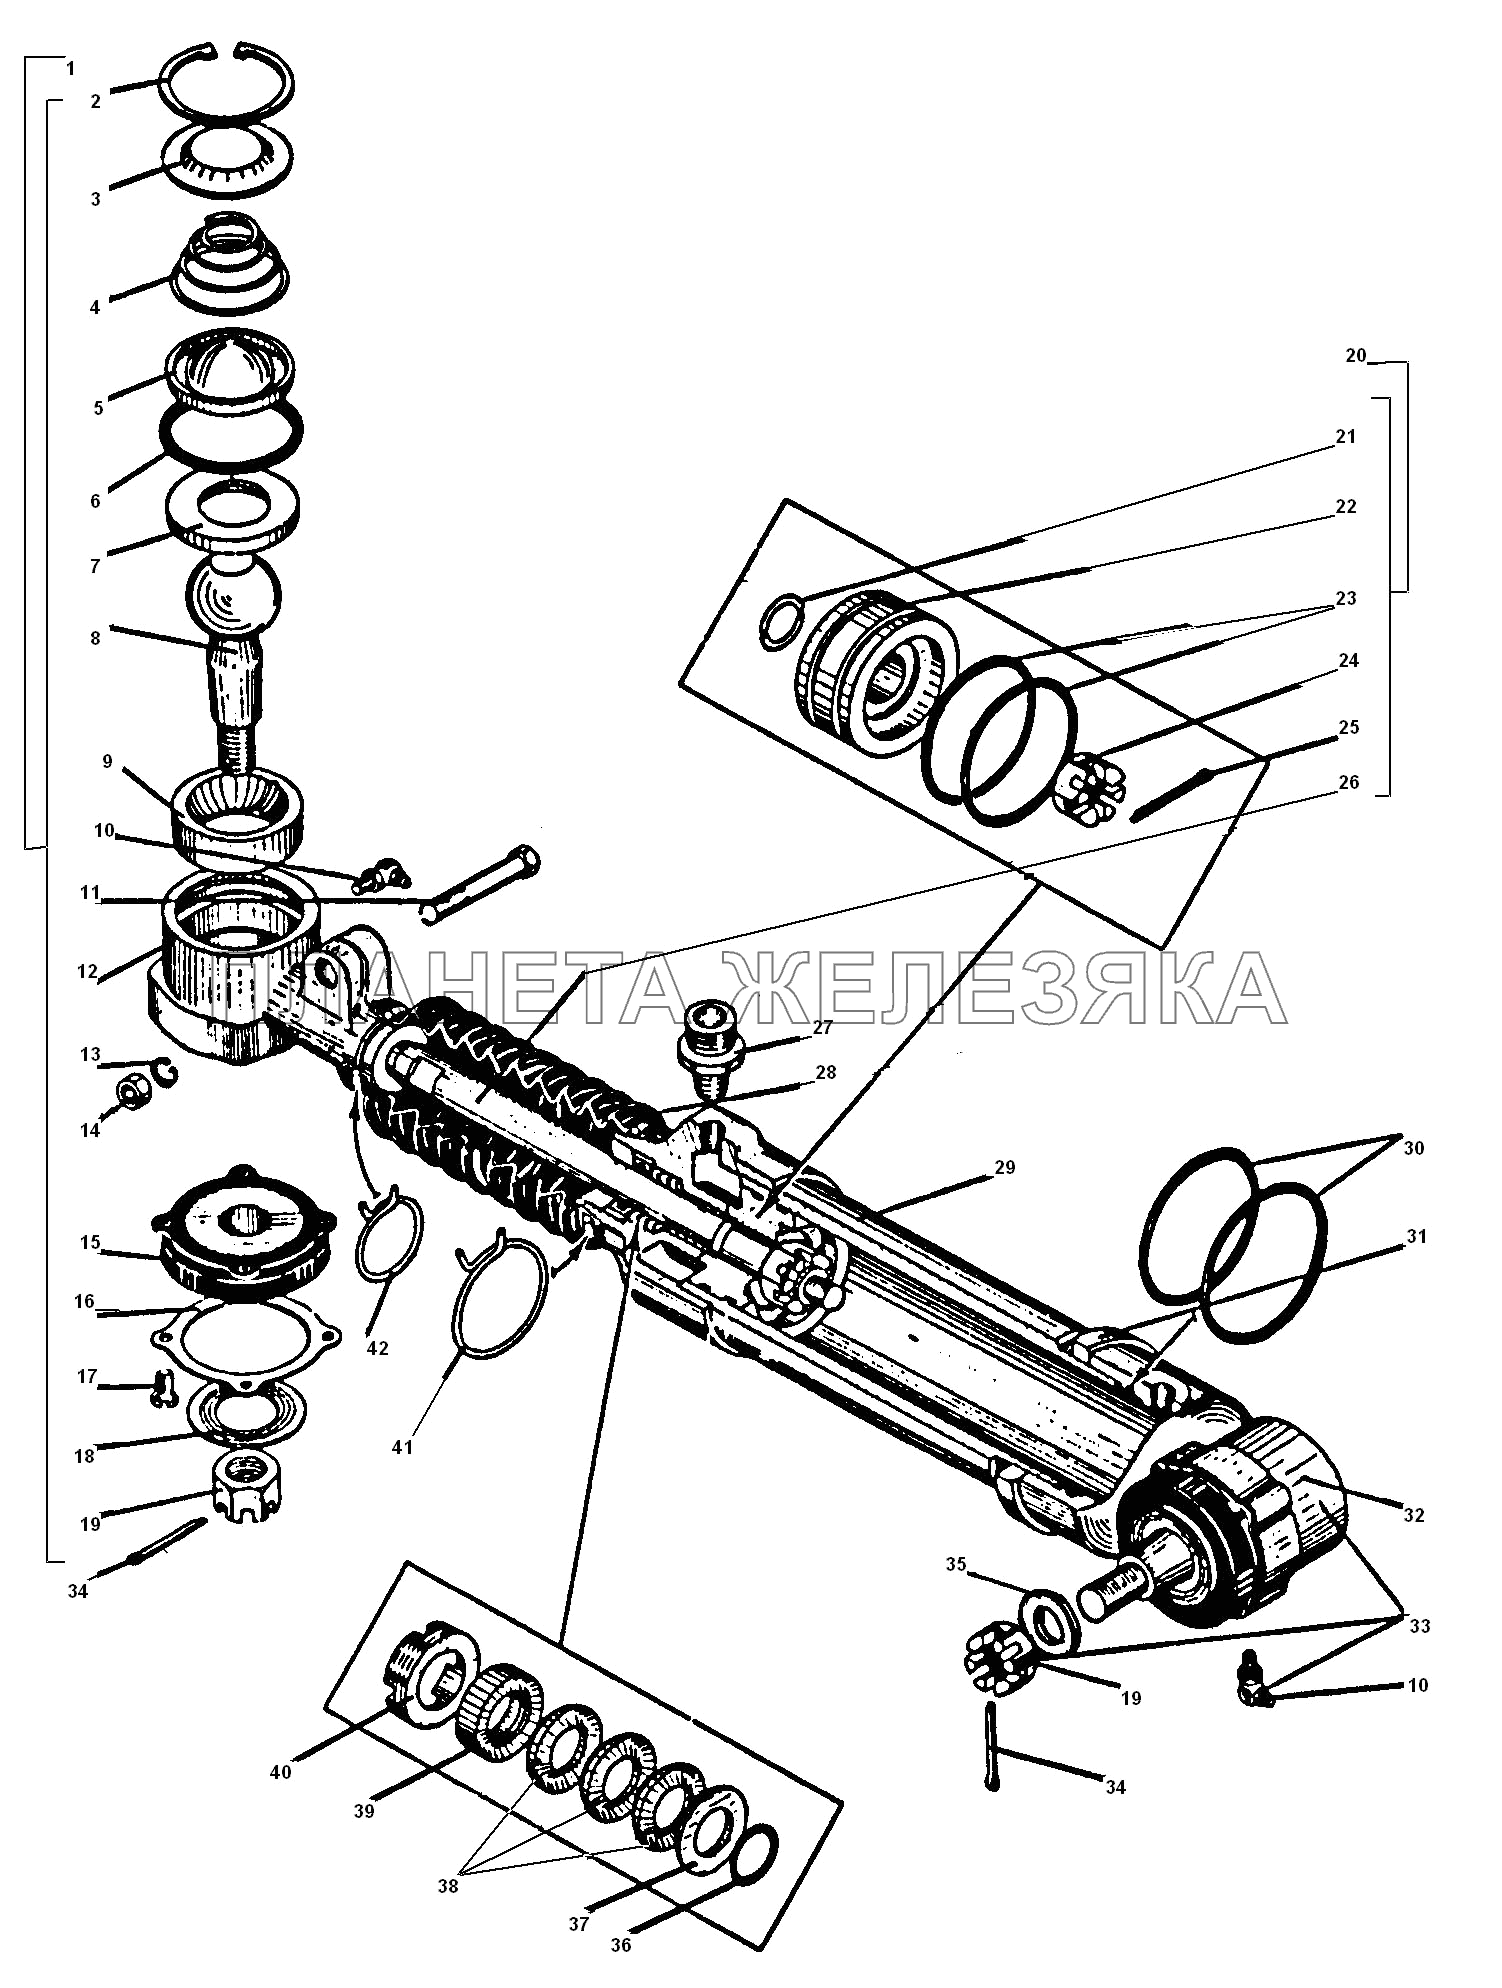 Усилительный механизм УРАЛ-55571-30